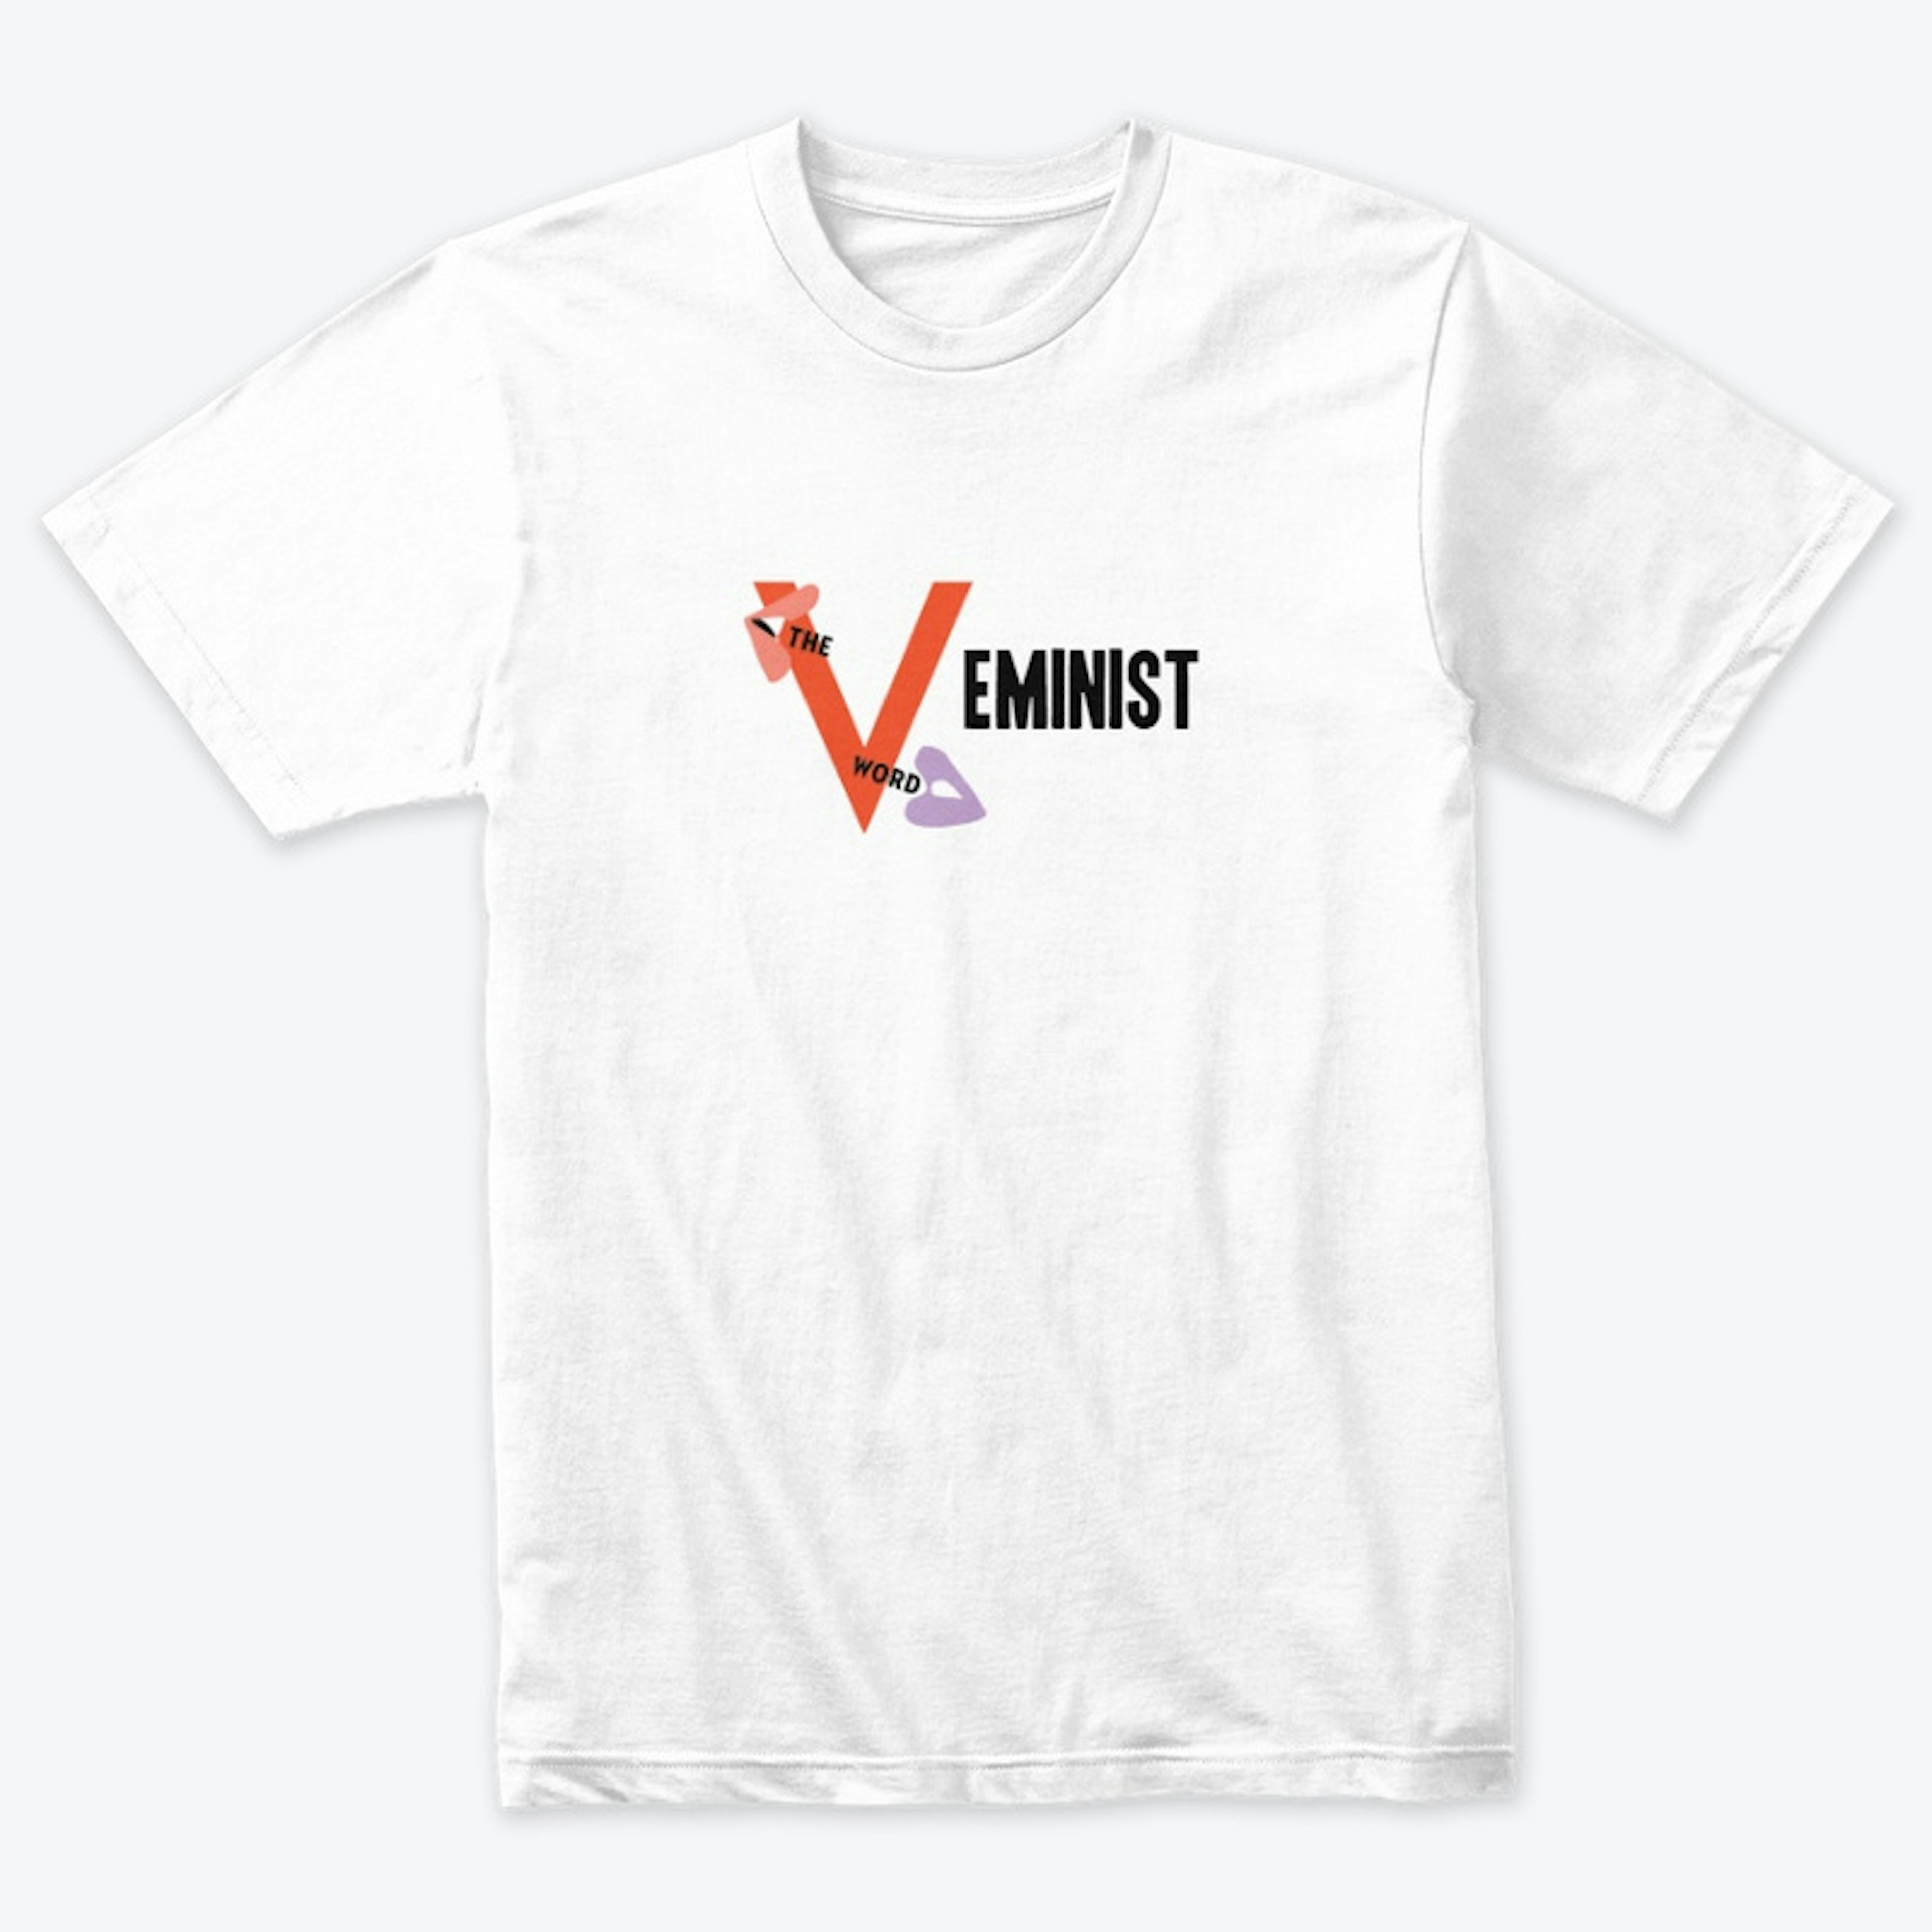 V is for "V"eminist